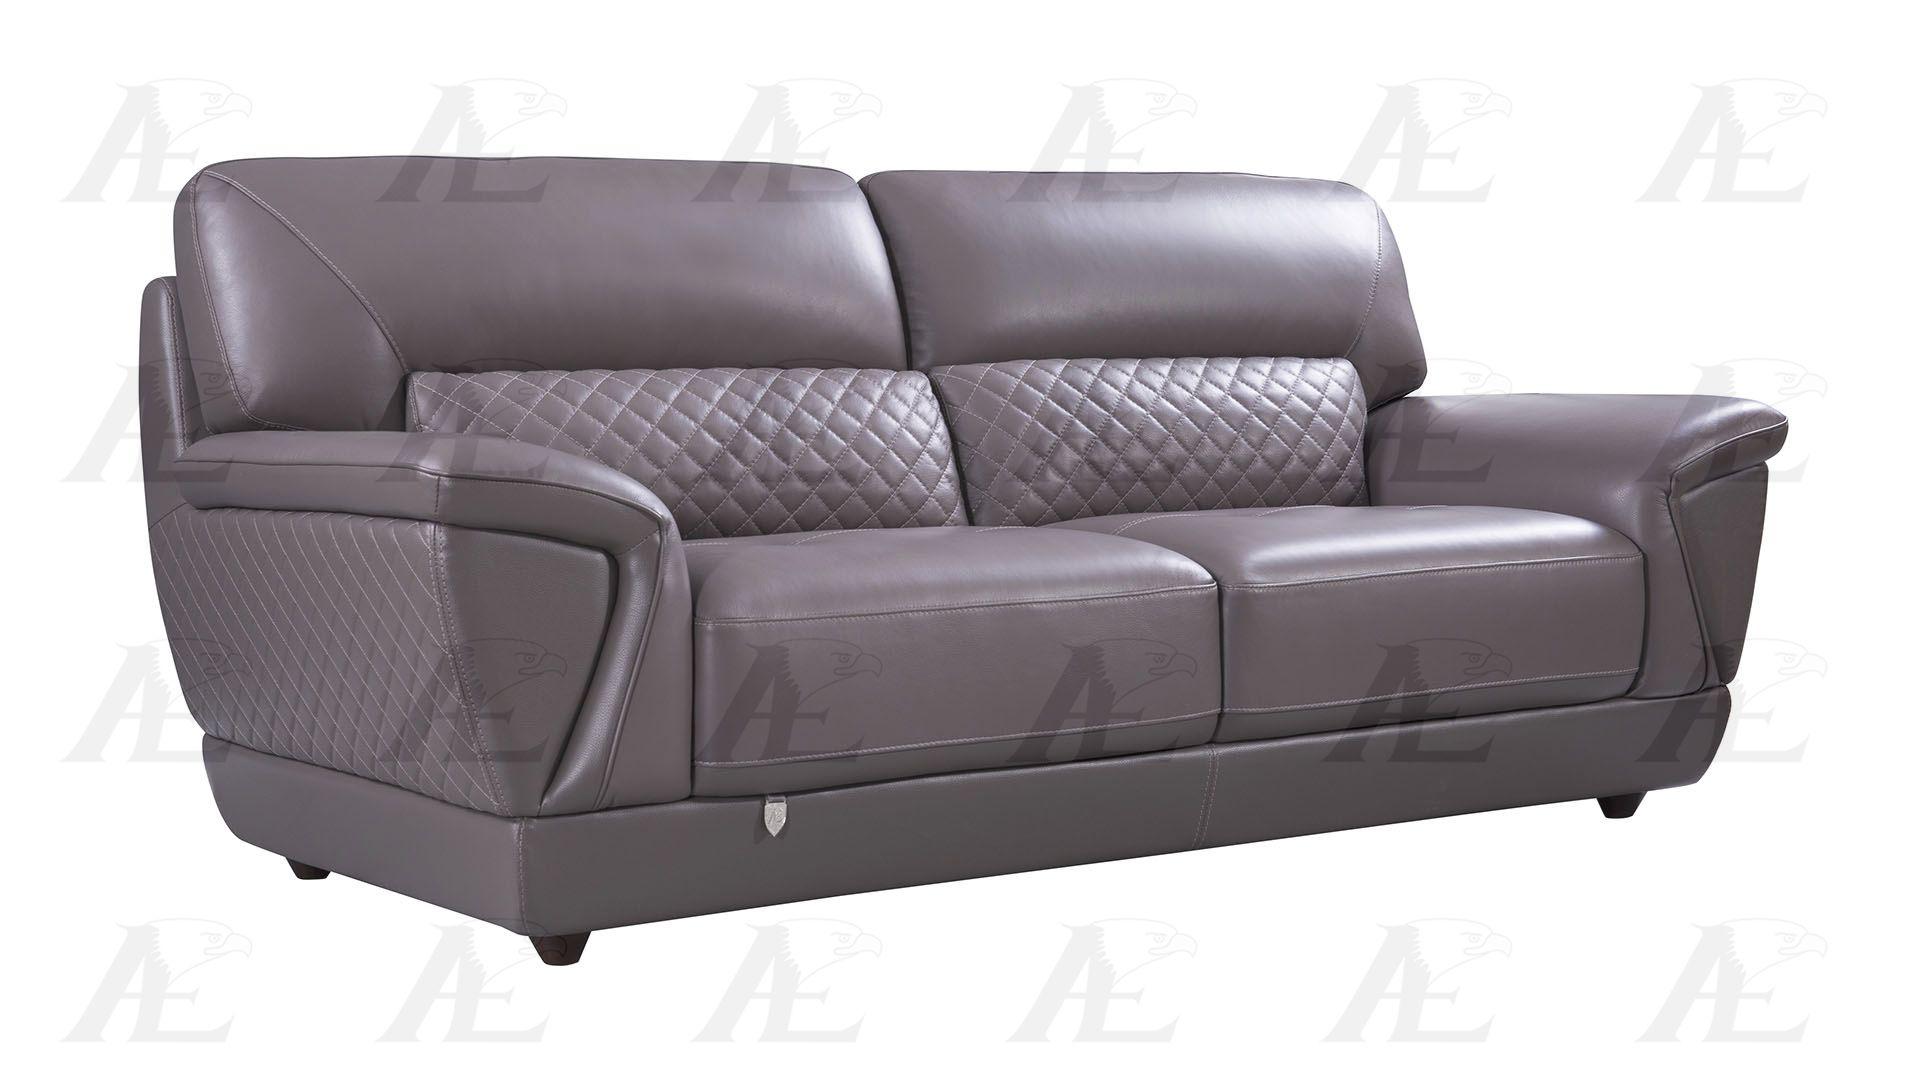 

    
EK099-DT-SF American Eagle Furniture Sofa
